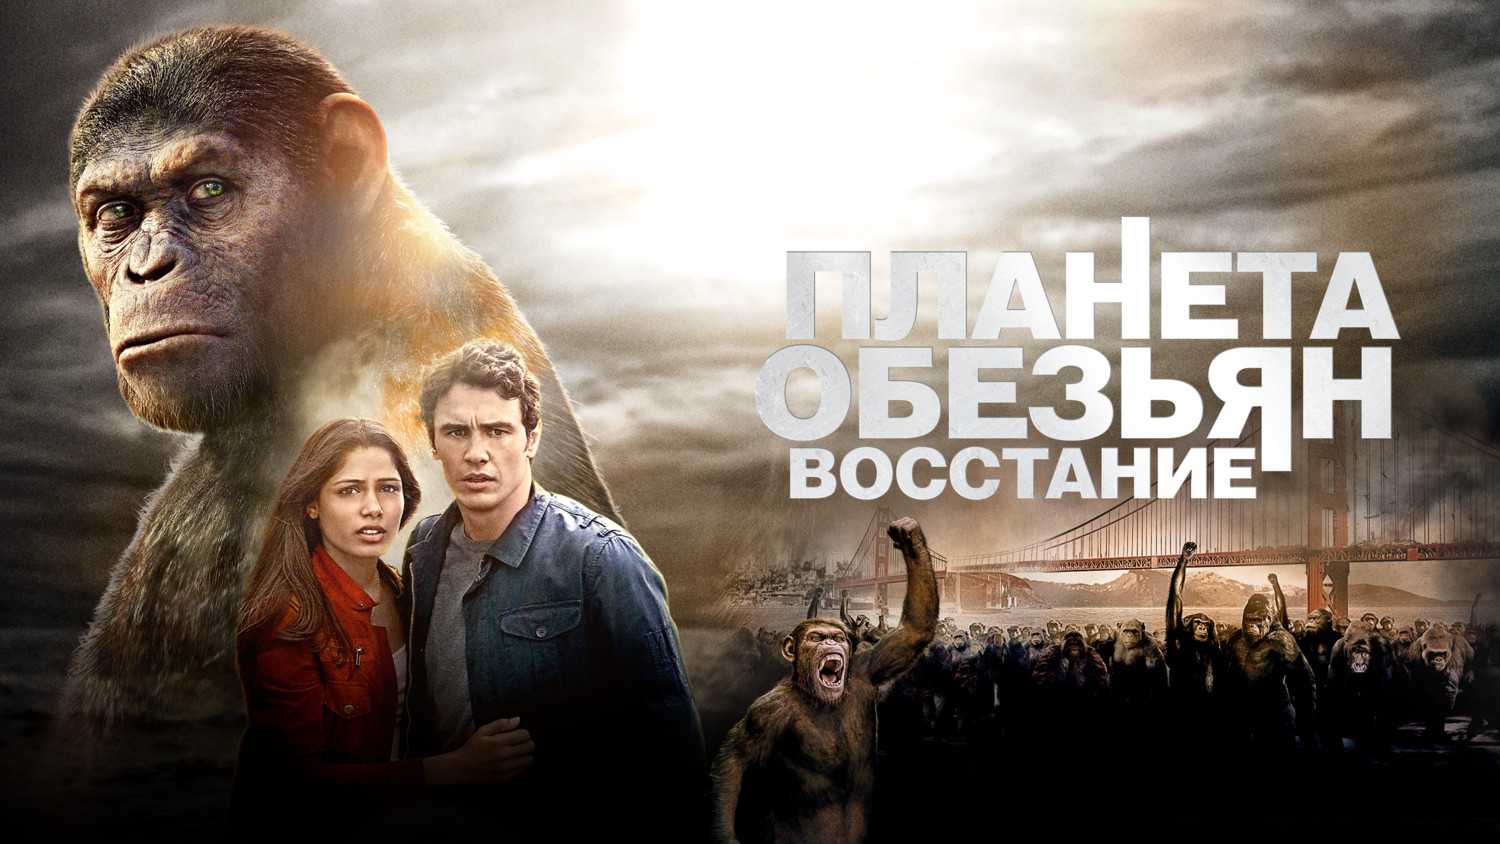 Планета обезьян все части: 1, 2, 3, 4 смотреть онлайн в хорошем качестве 720-1080 hd, бесплатно на русском языке